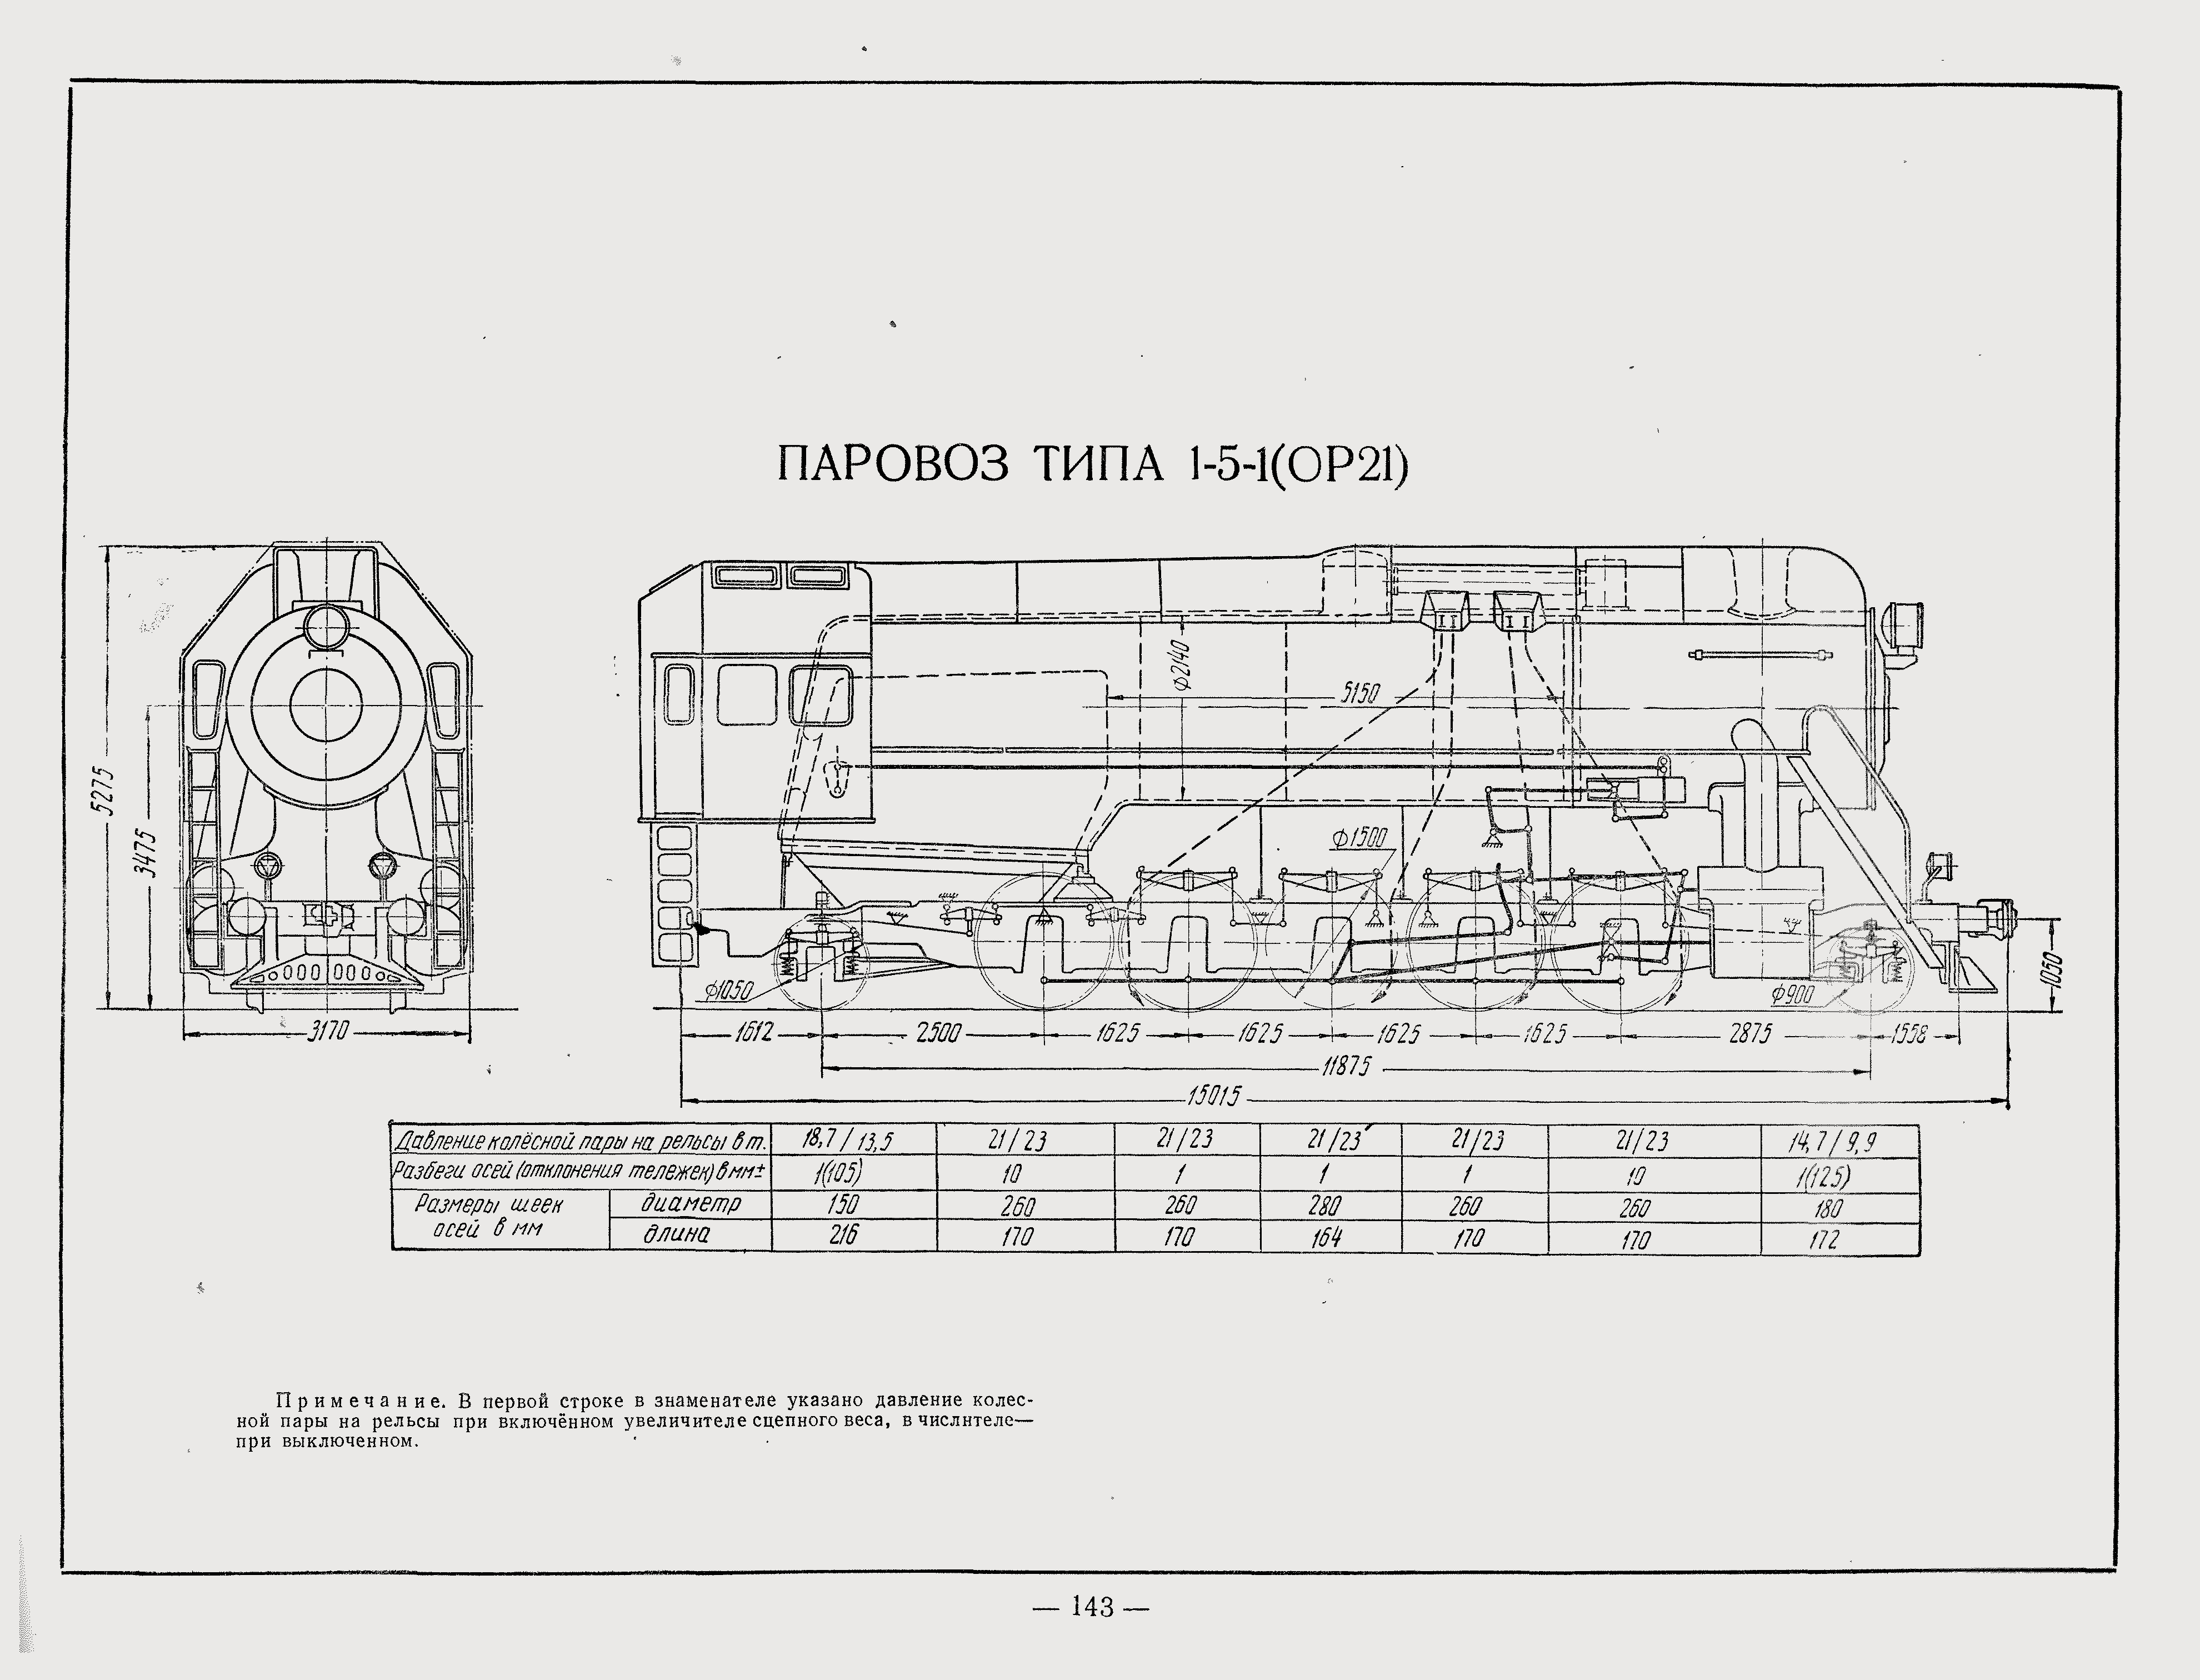 铁道科普苏联铁路最后的圣达菲or21型蒸汽机车